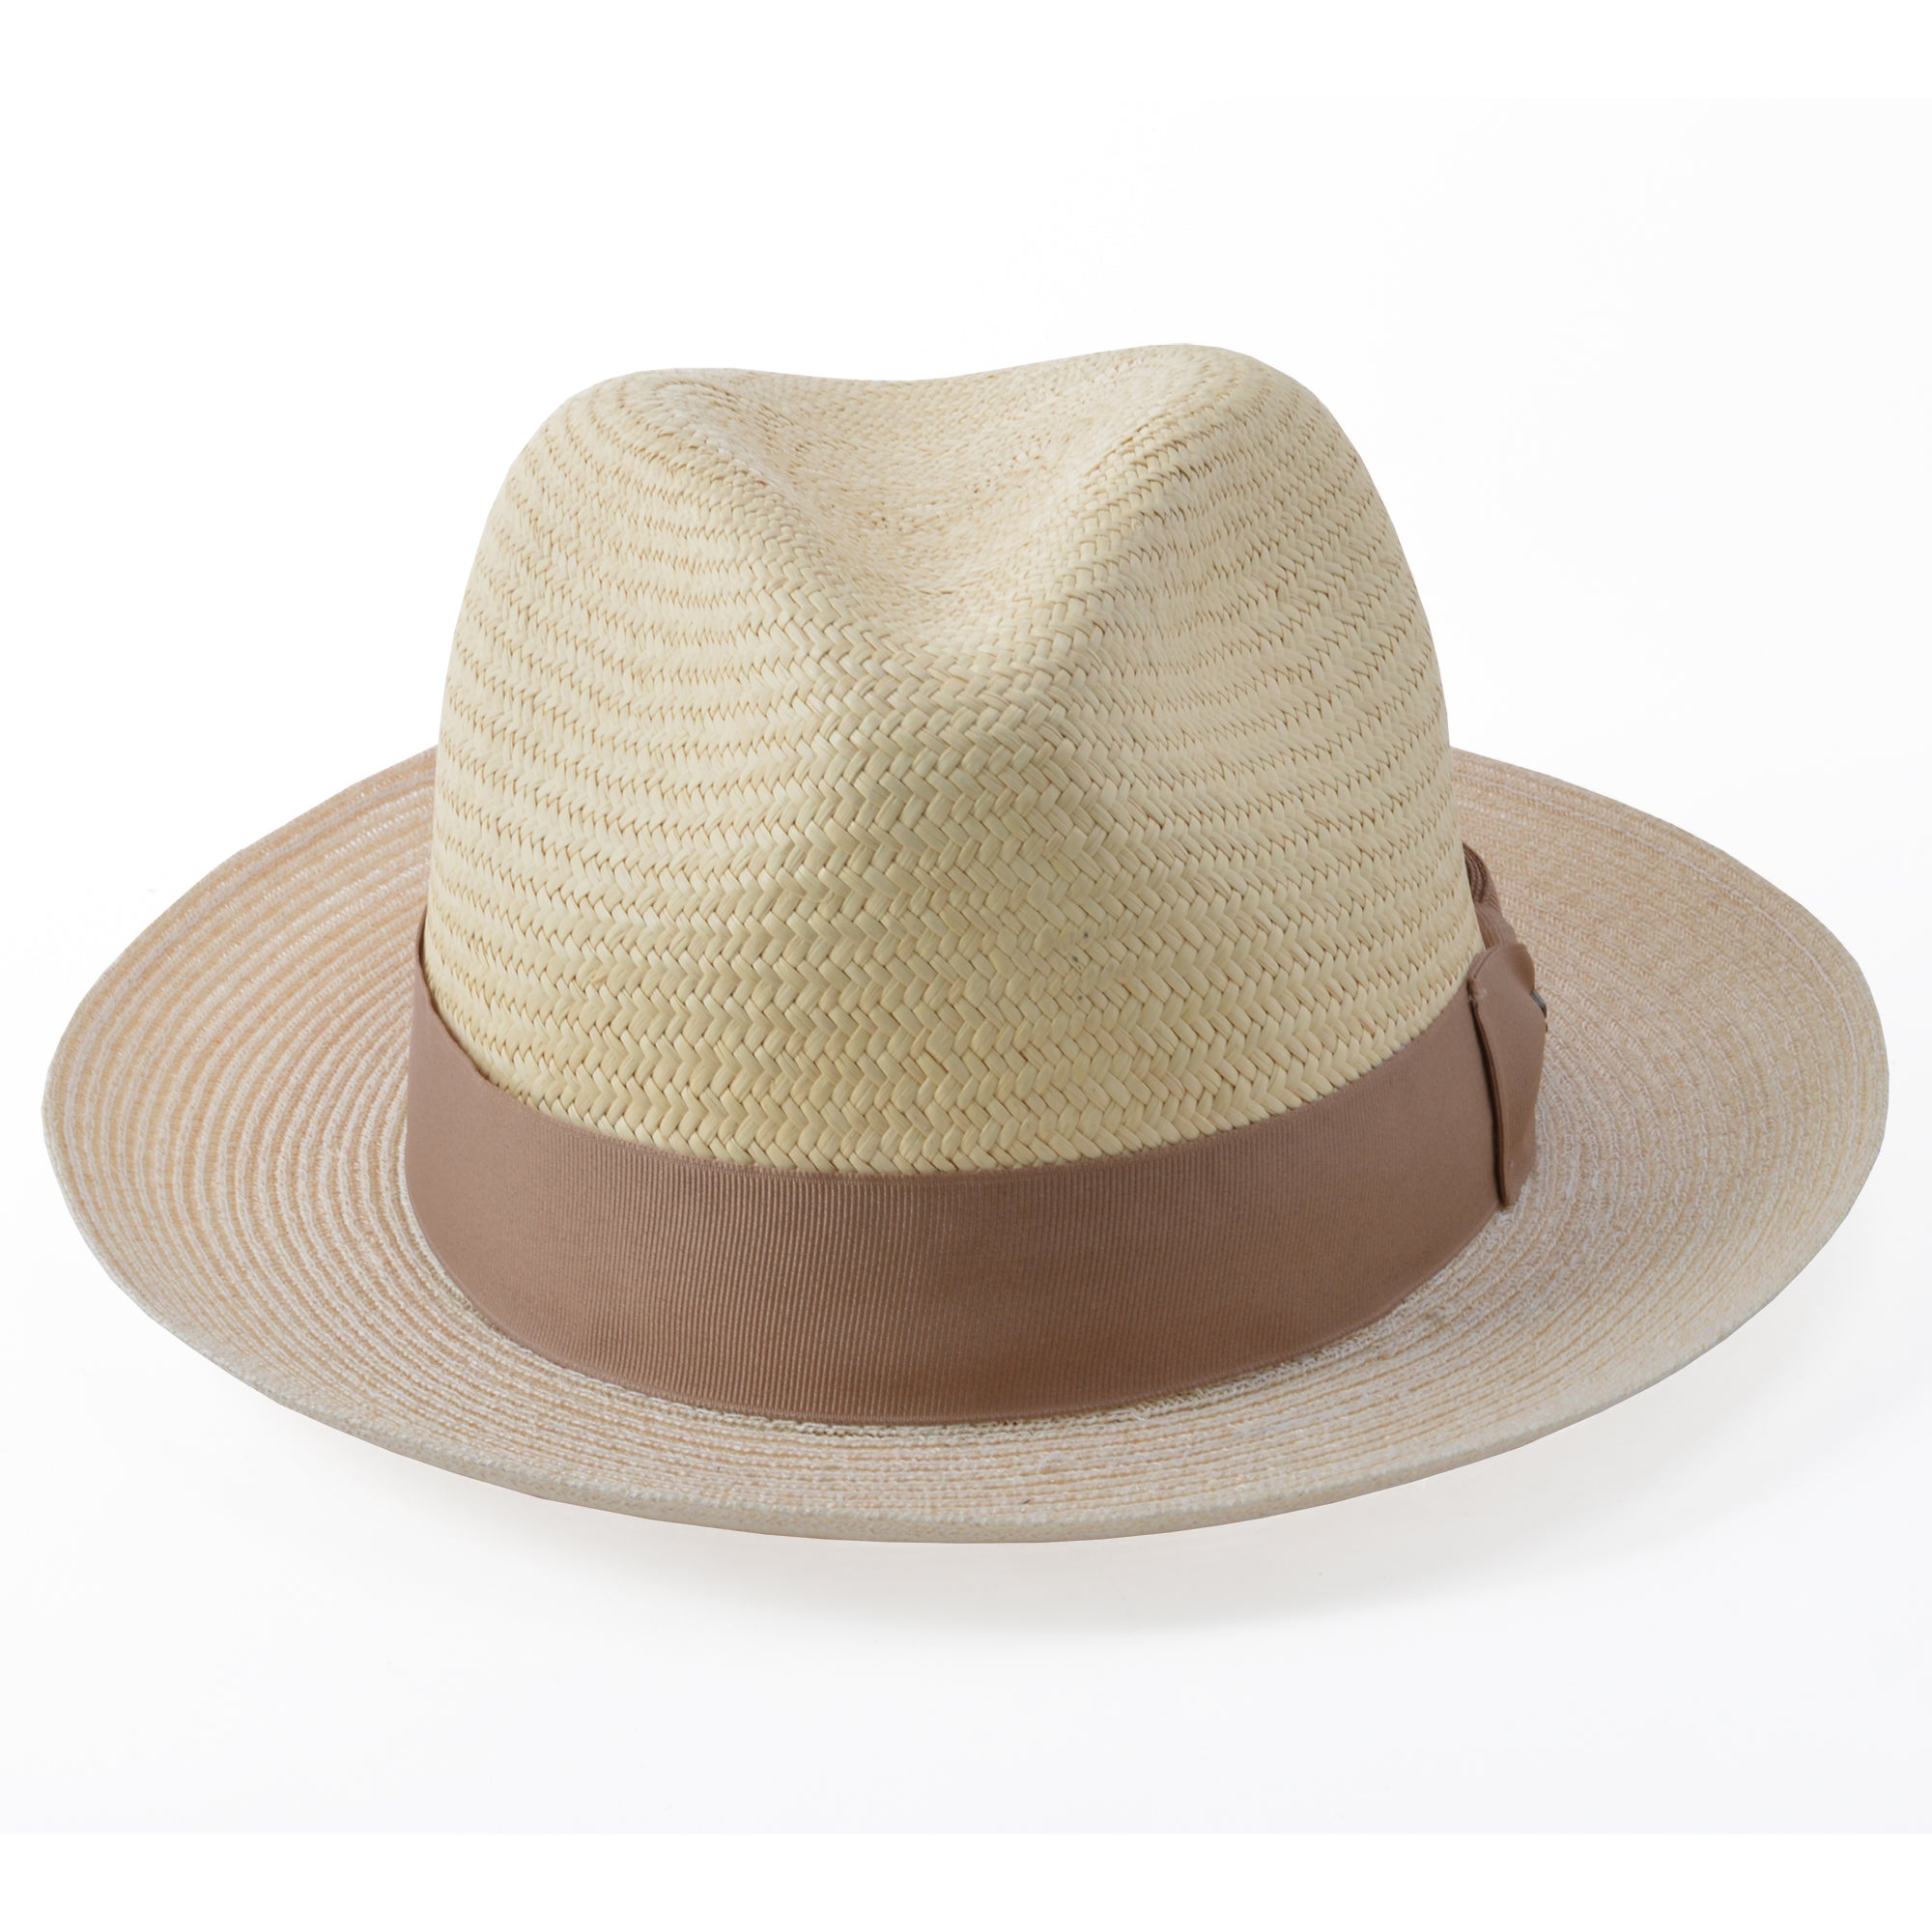 Stetson Aston Hemp & Panama Straw Fedora Hat - 0